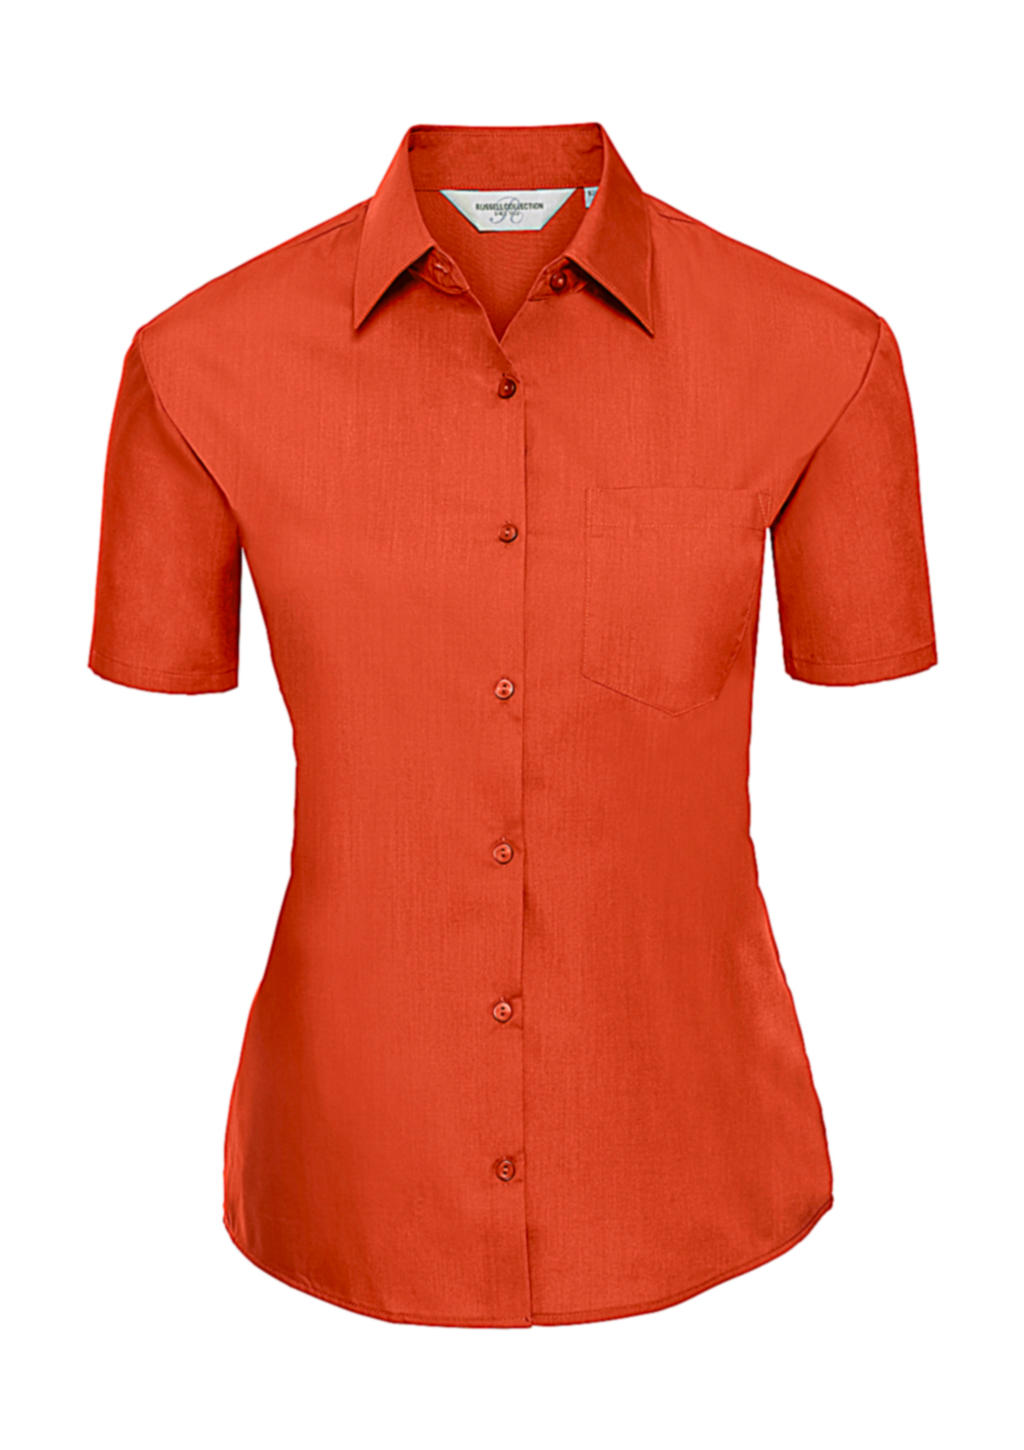  Ladies Poplin Shirt in Farbe Orange